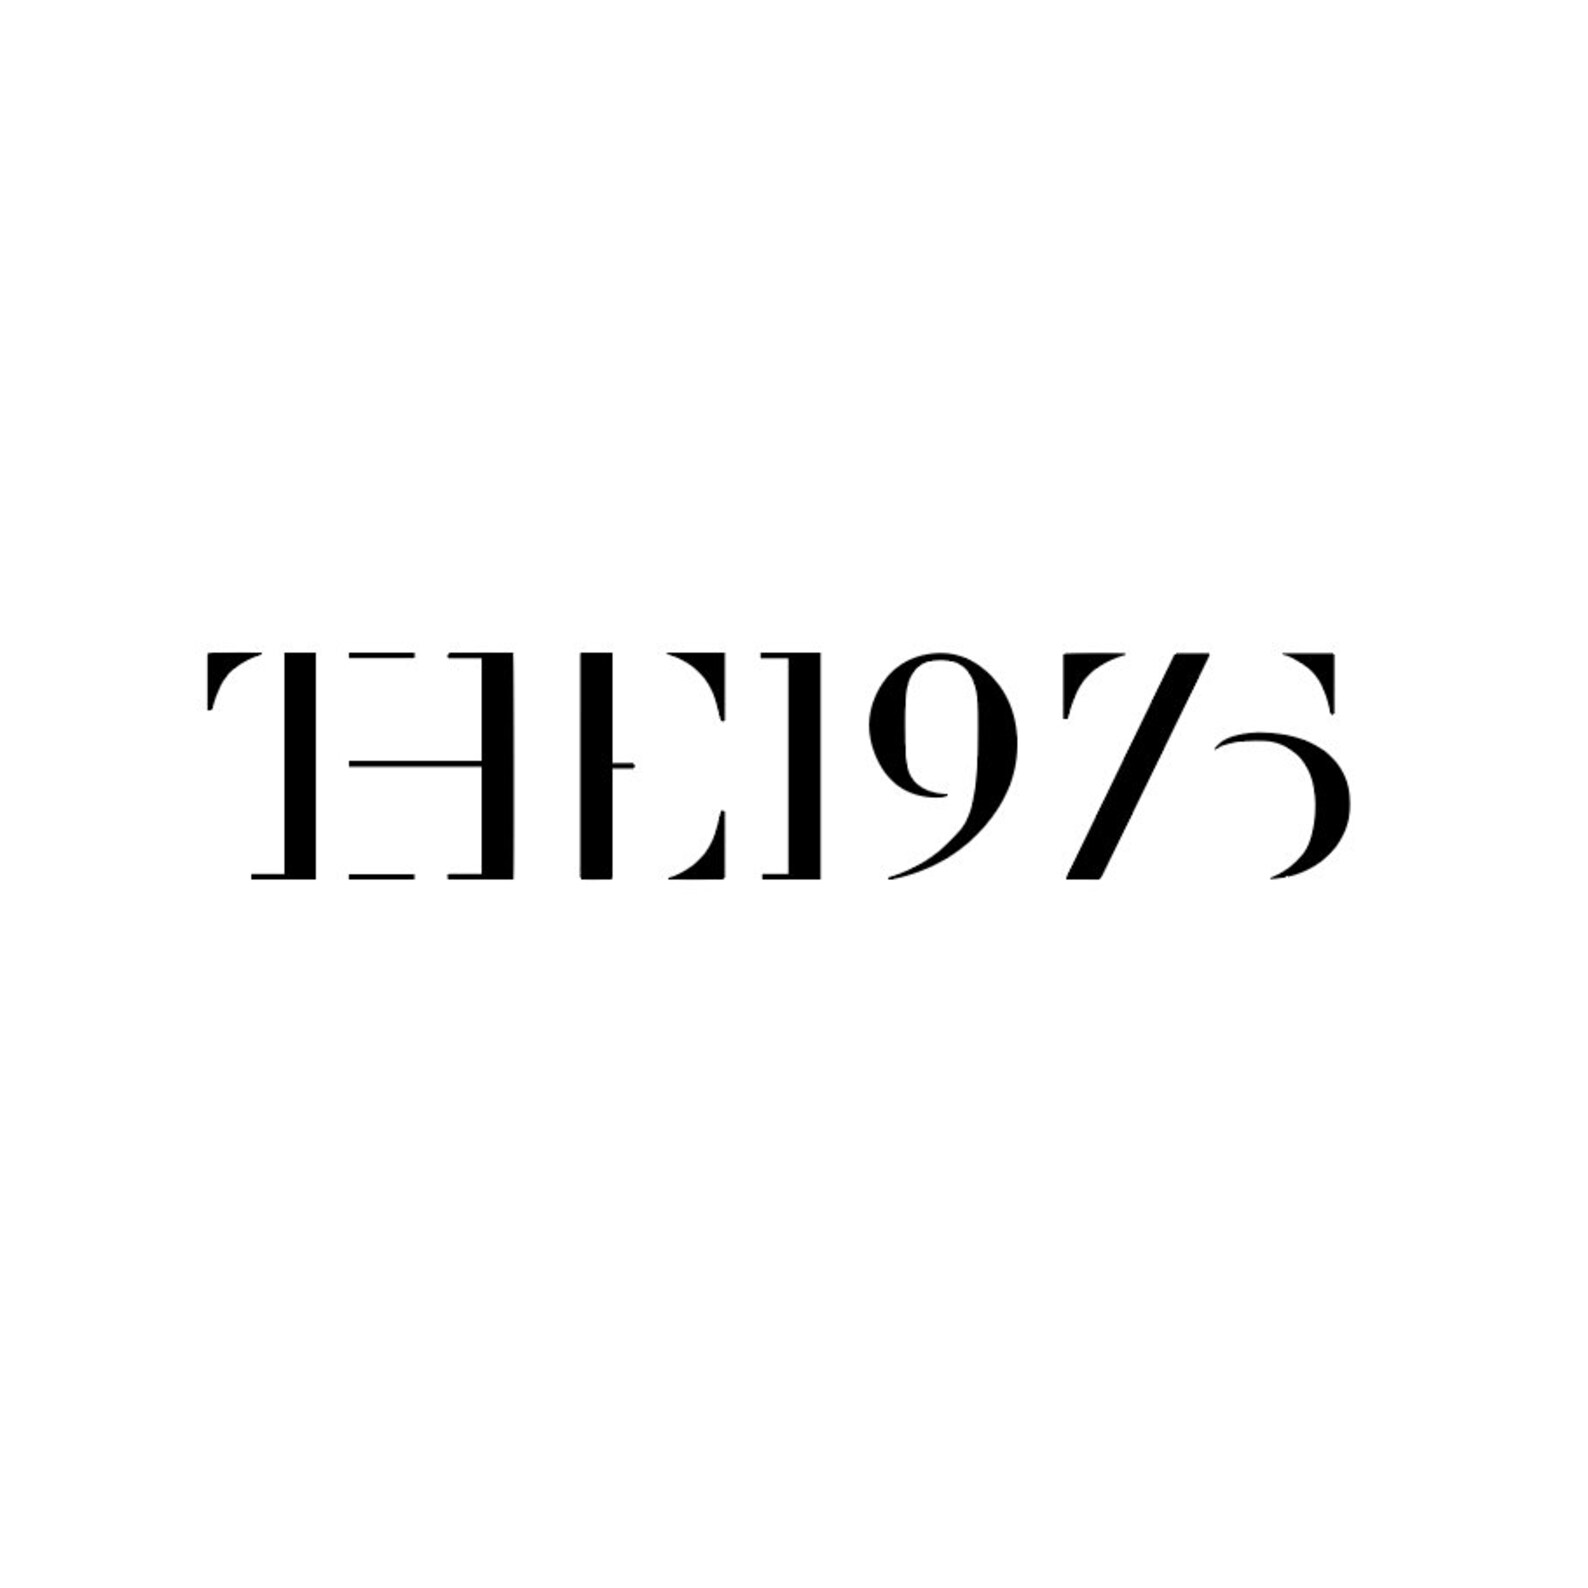 The 1975 Band Logo | Etsy